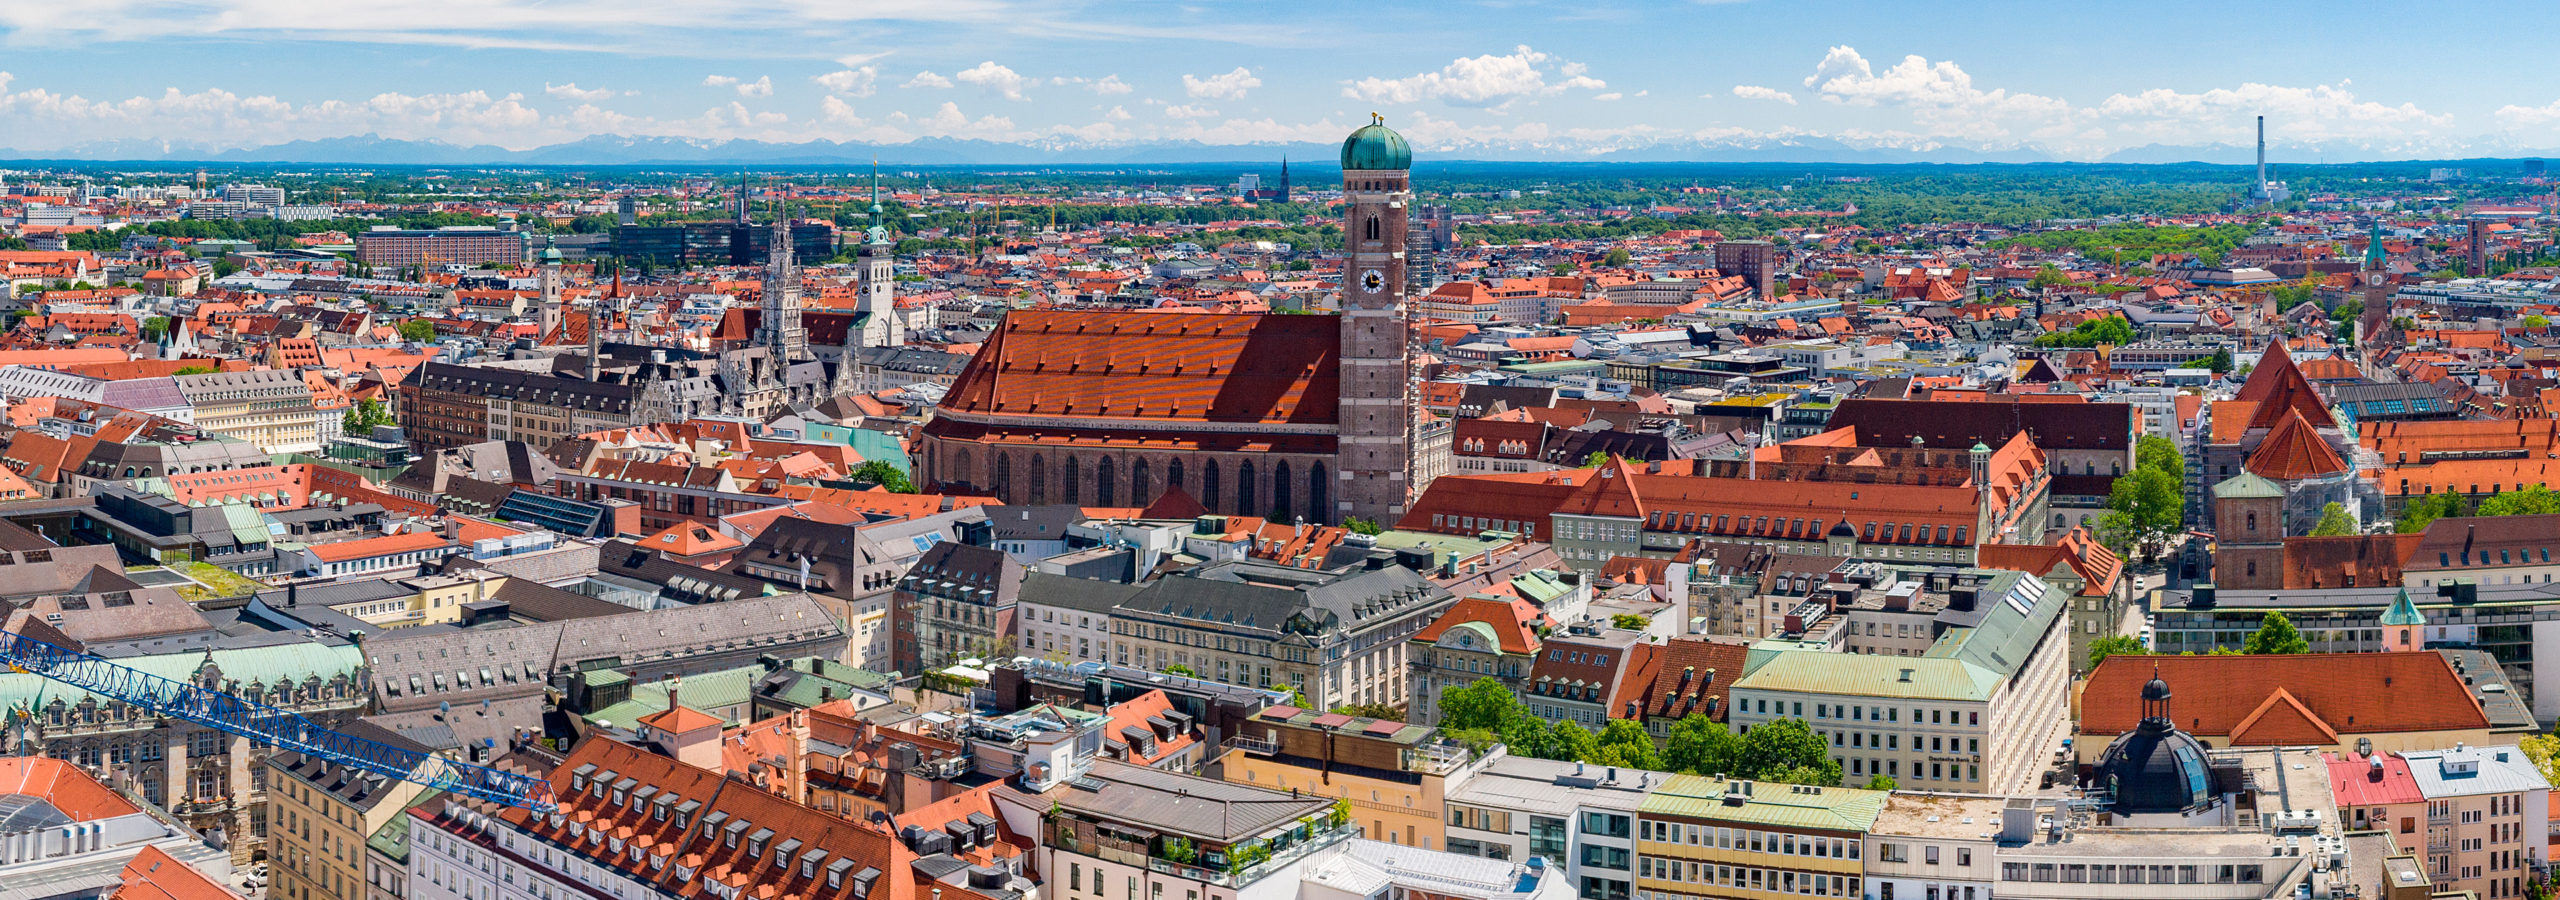 Immobilie verkaufen in München und Region